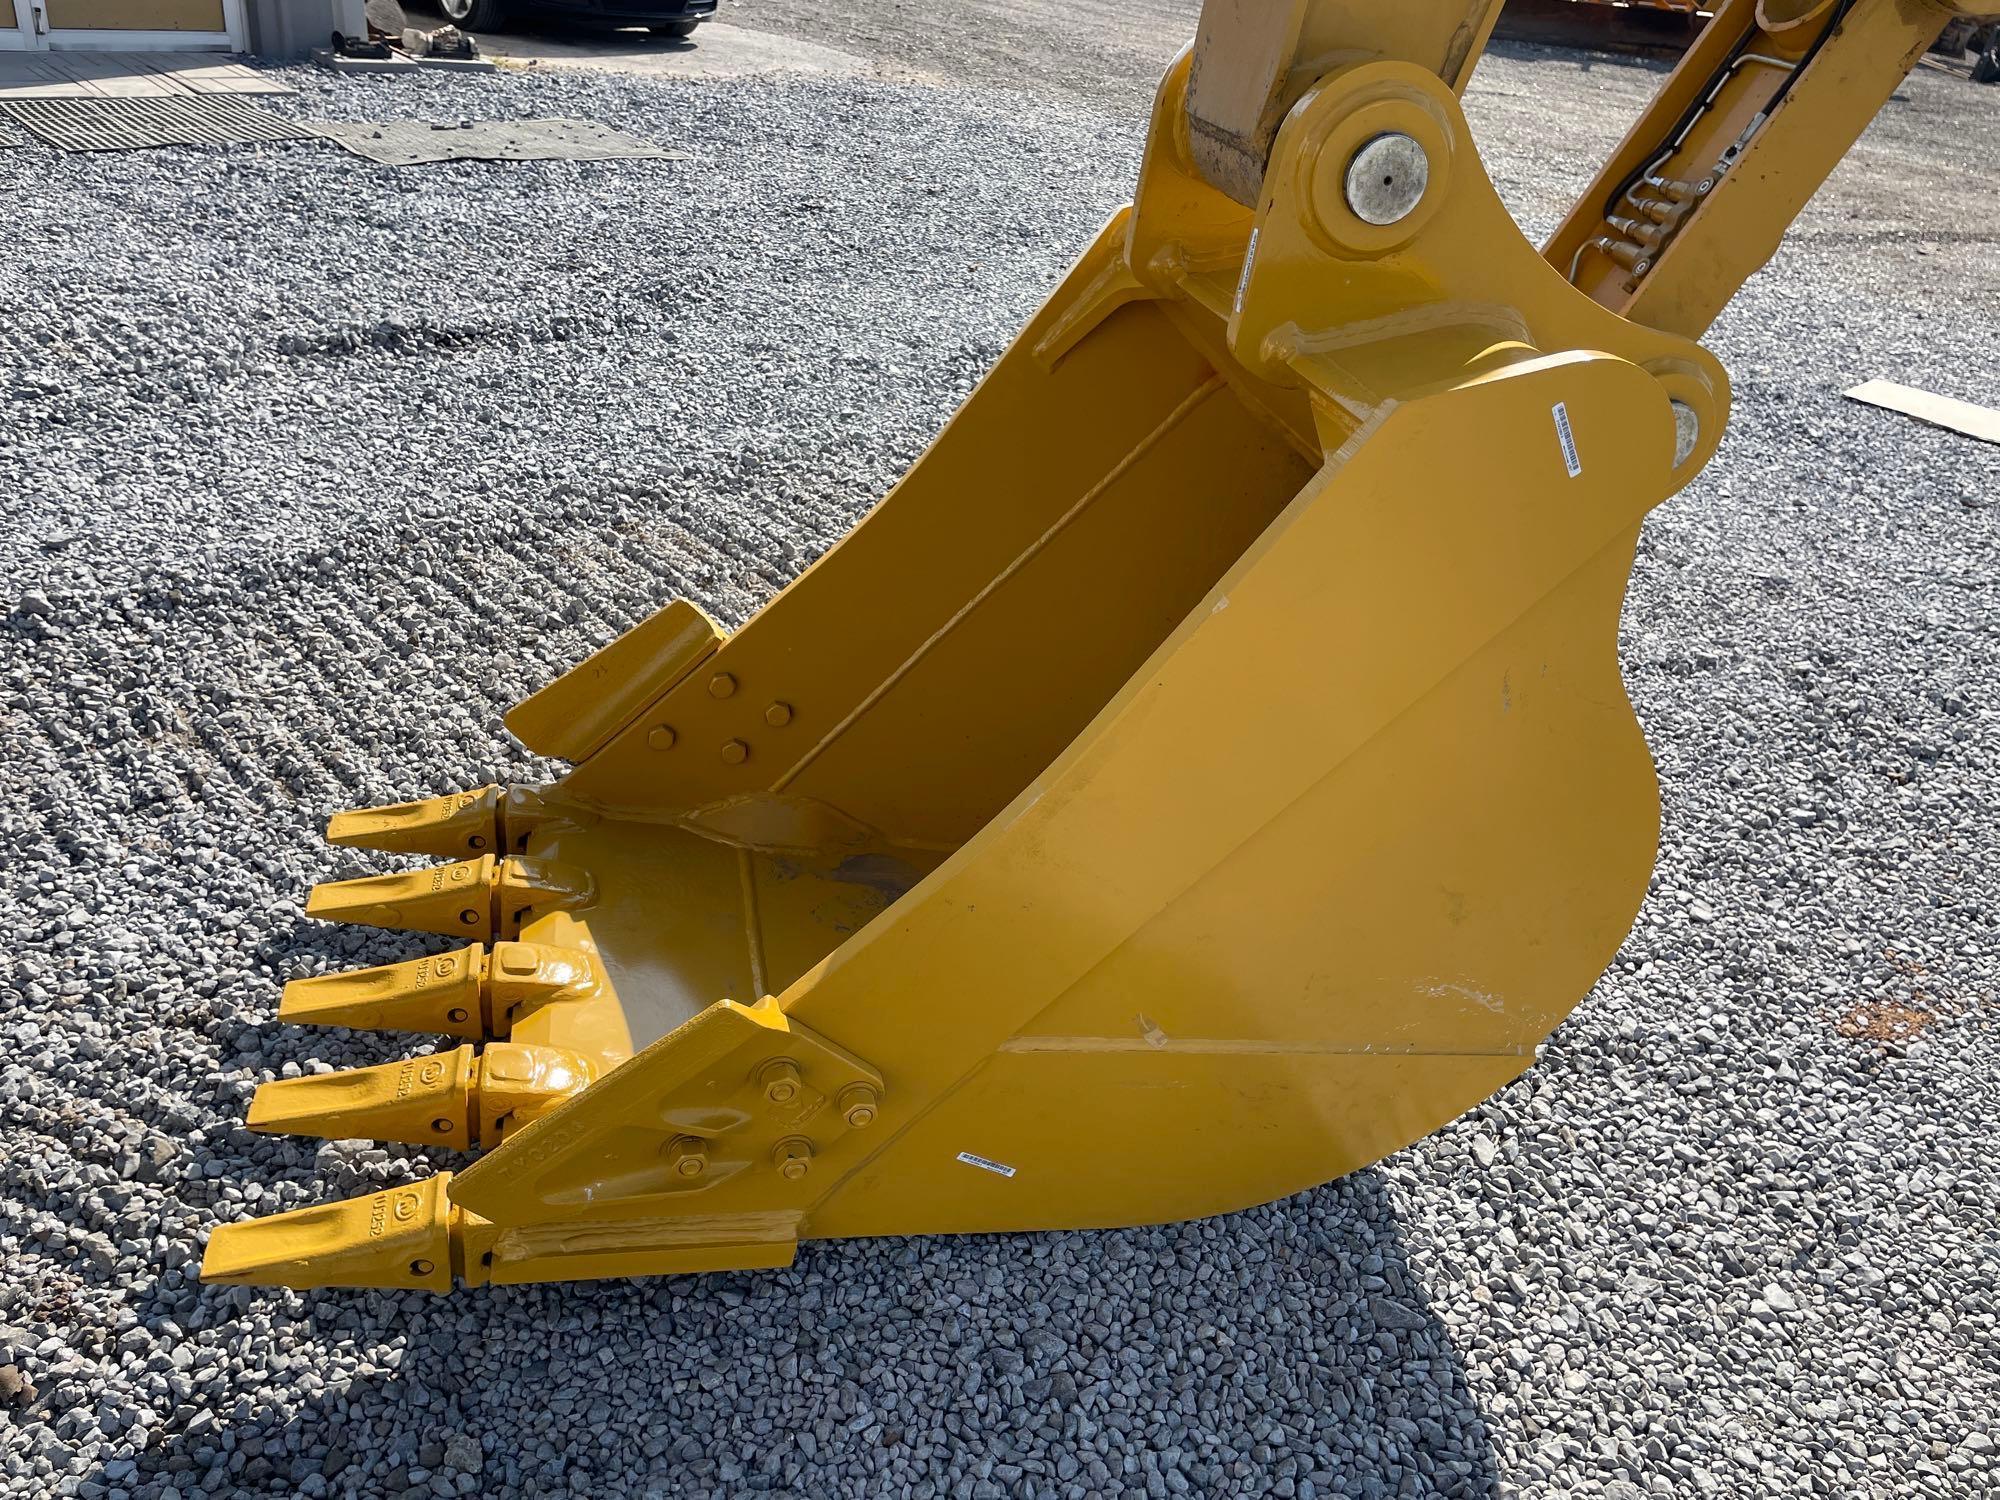 NEW/UNUSED 2021 Caterpillar 315GC Hydraulic Excavator